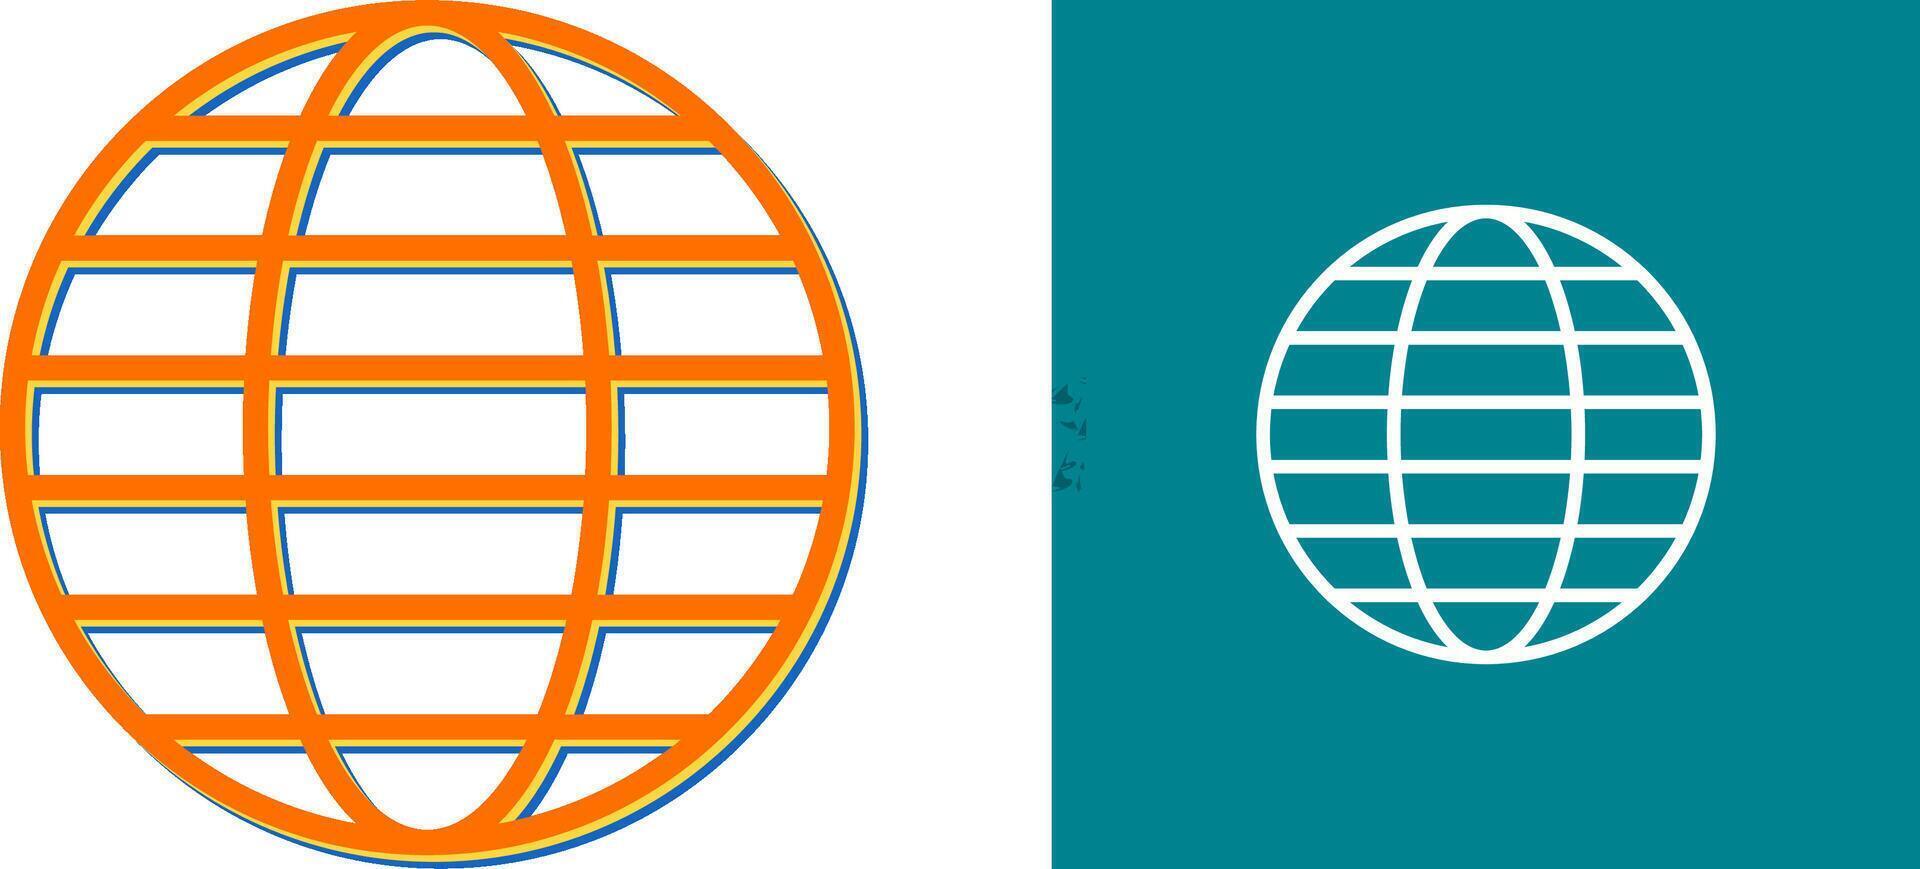 wereldbol vector pictogram